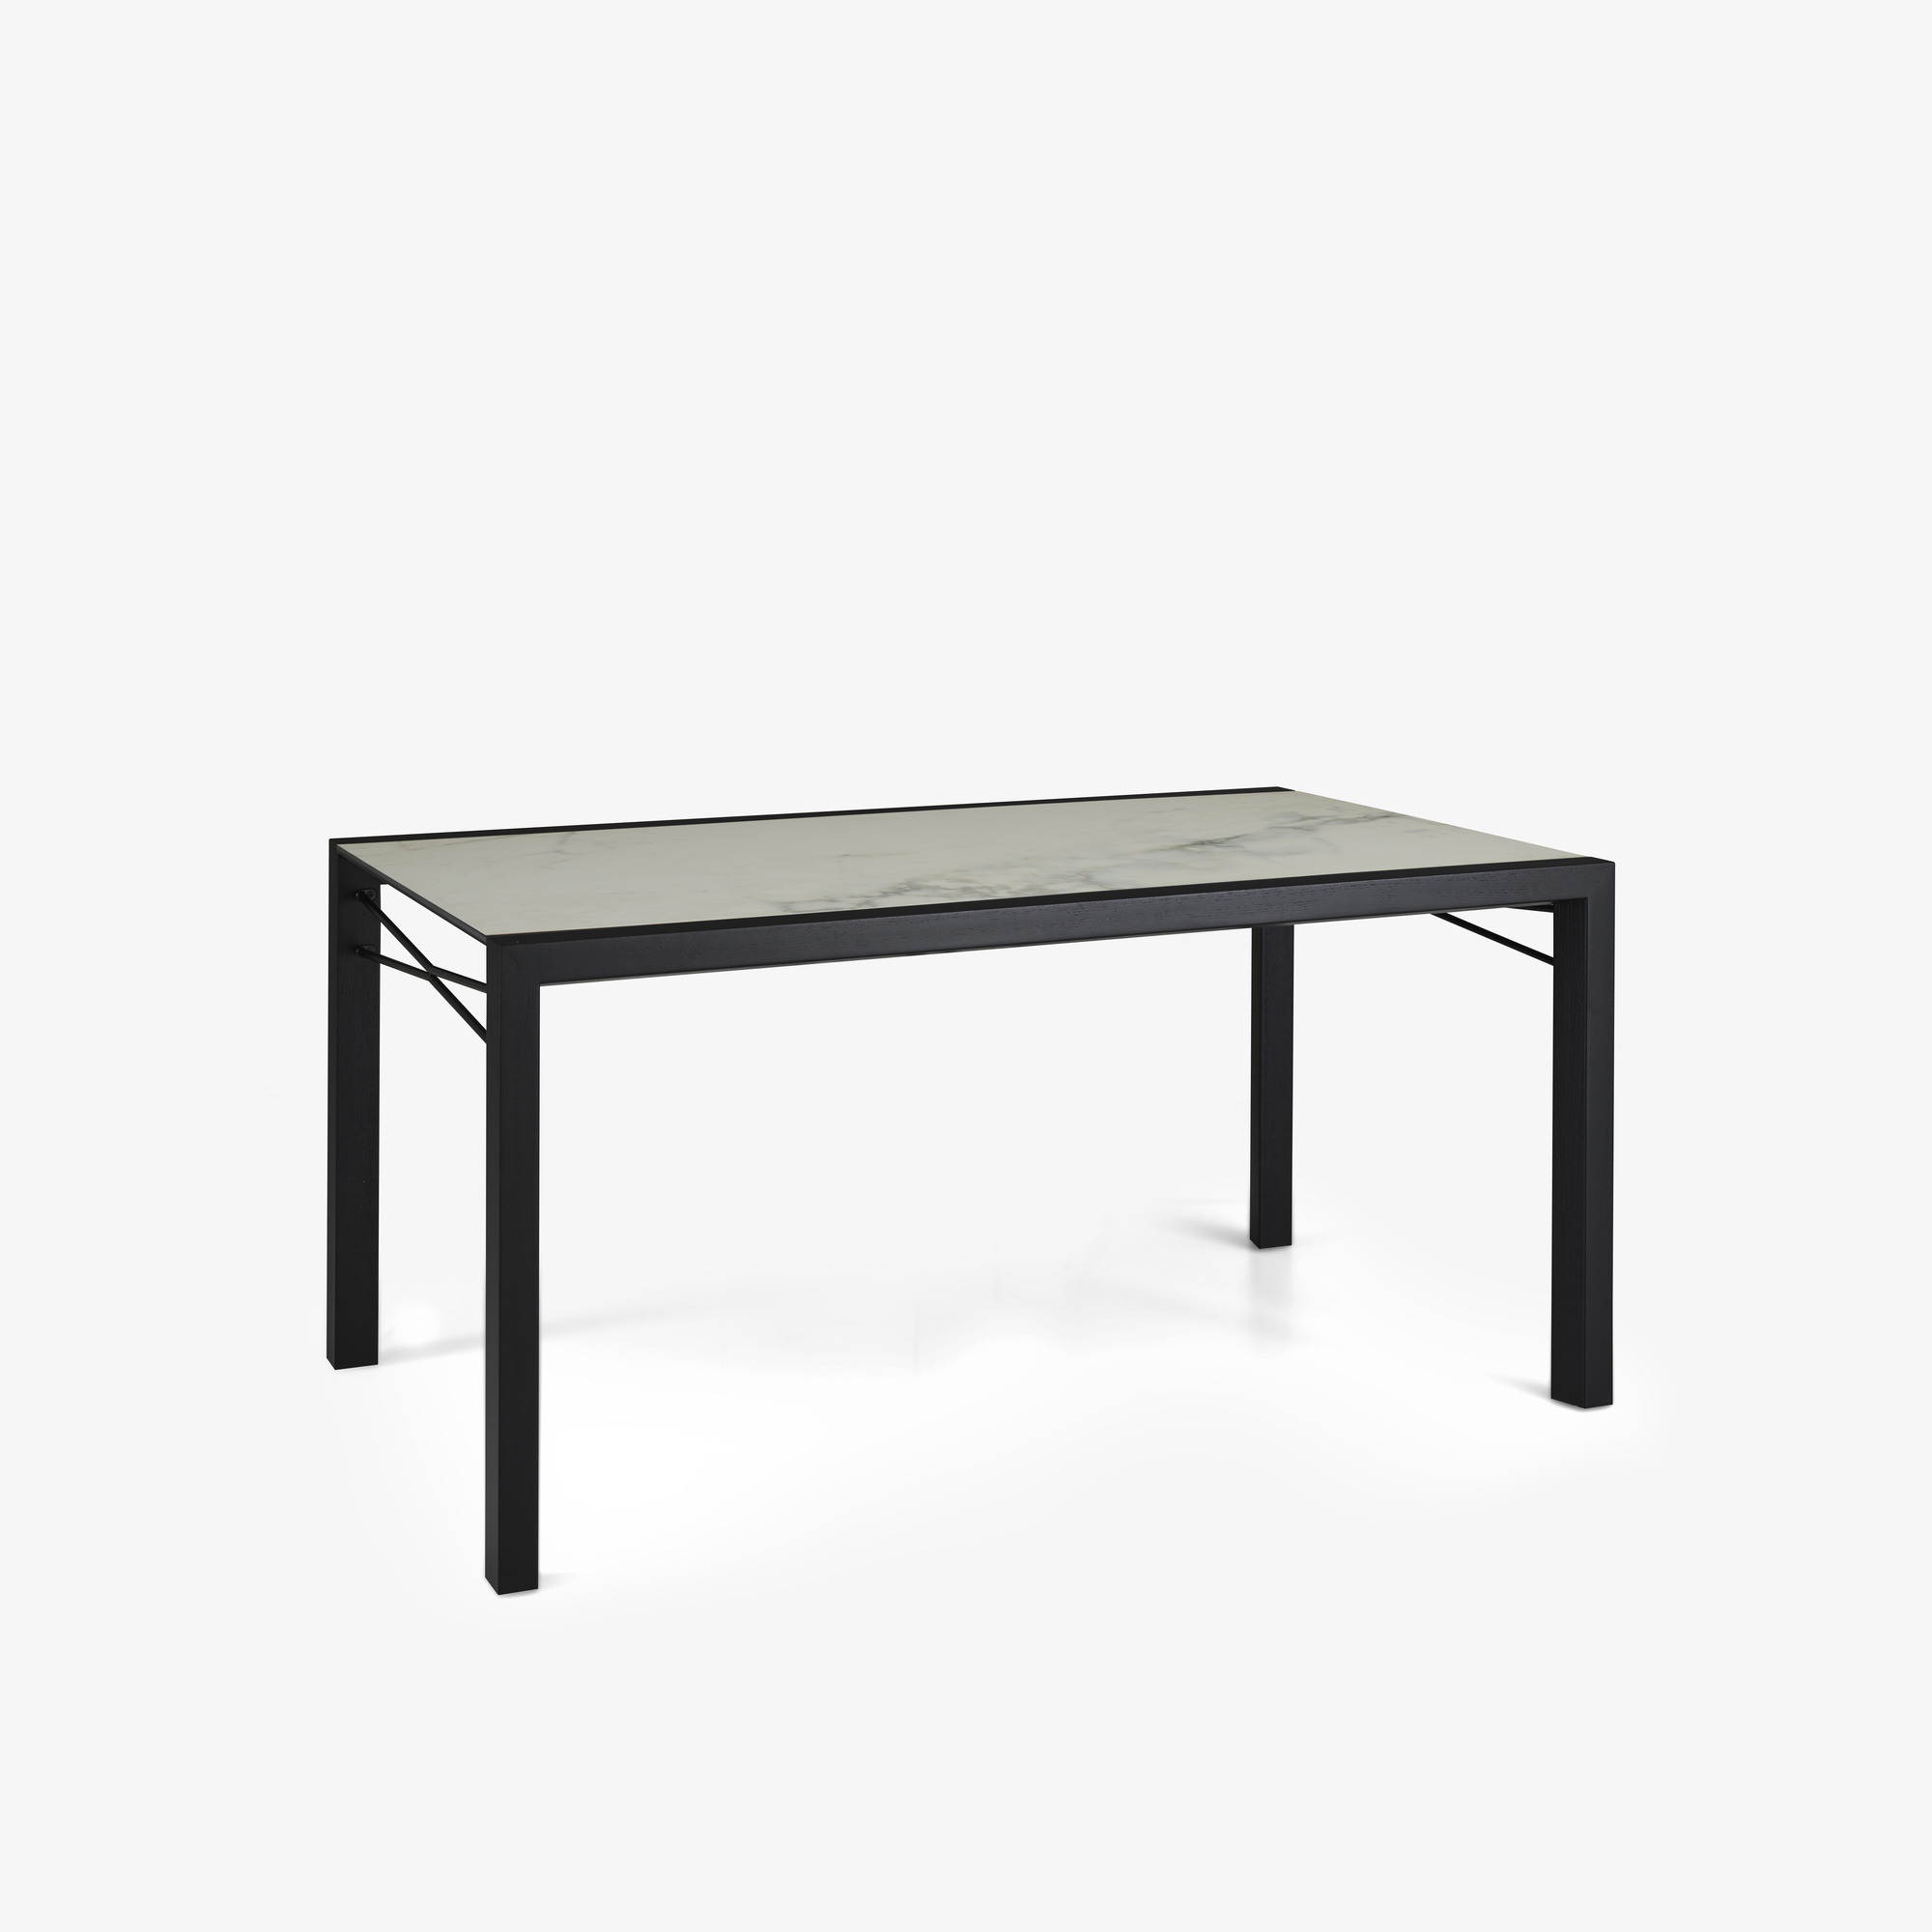 Image 餐桌 桌面由白色大理石效果的太空瓷制成 黑色白蜡木底座 2